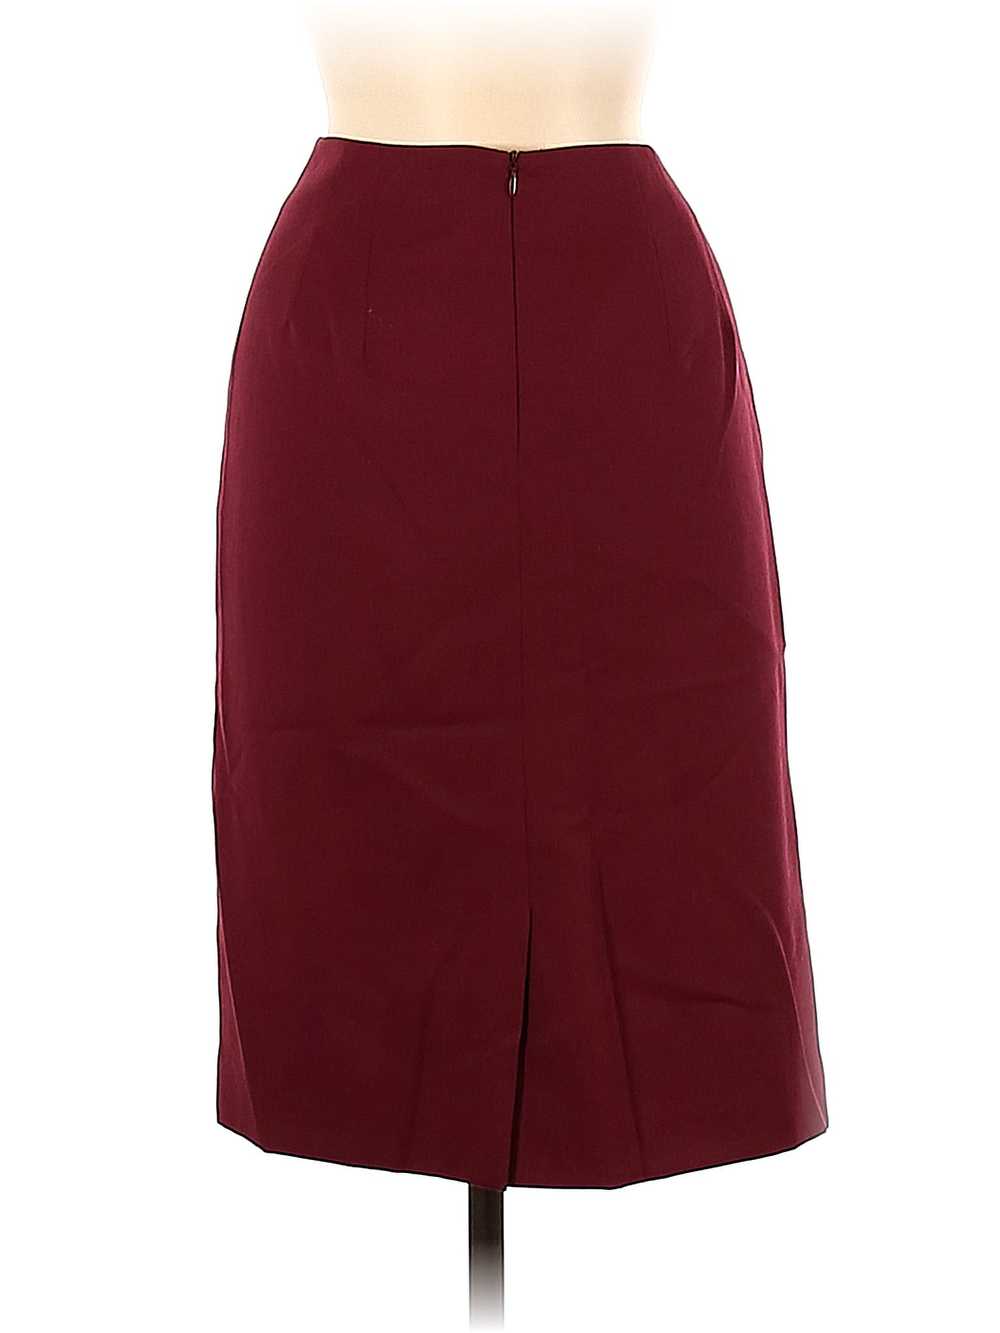 Pendleton Women Red Wool Skirt 10 Petites - image 2